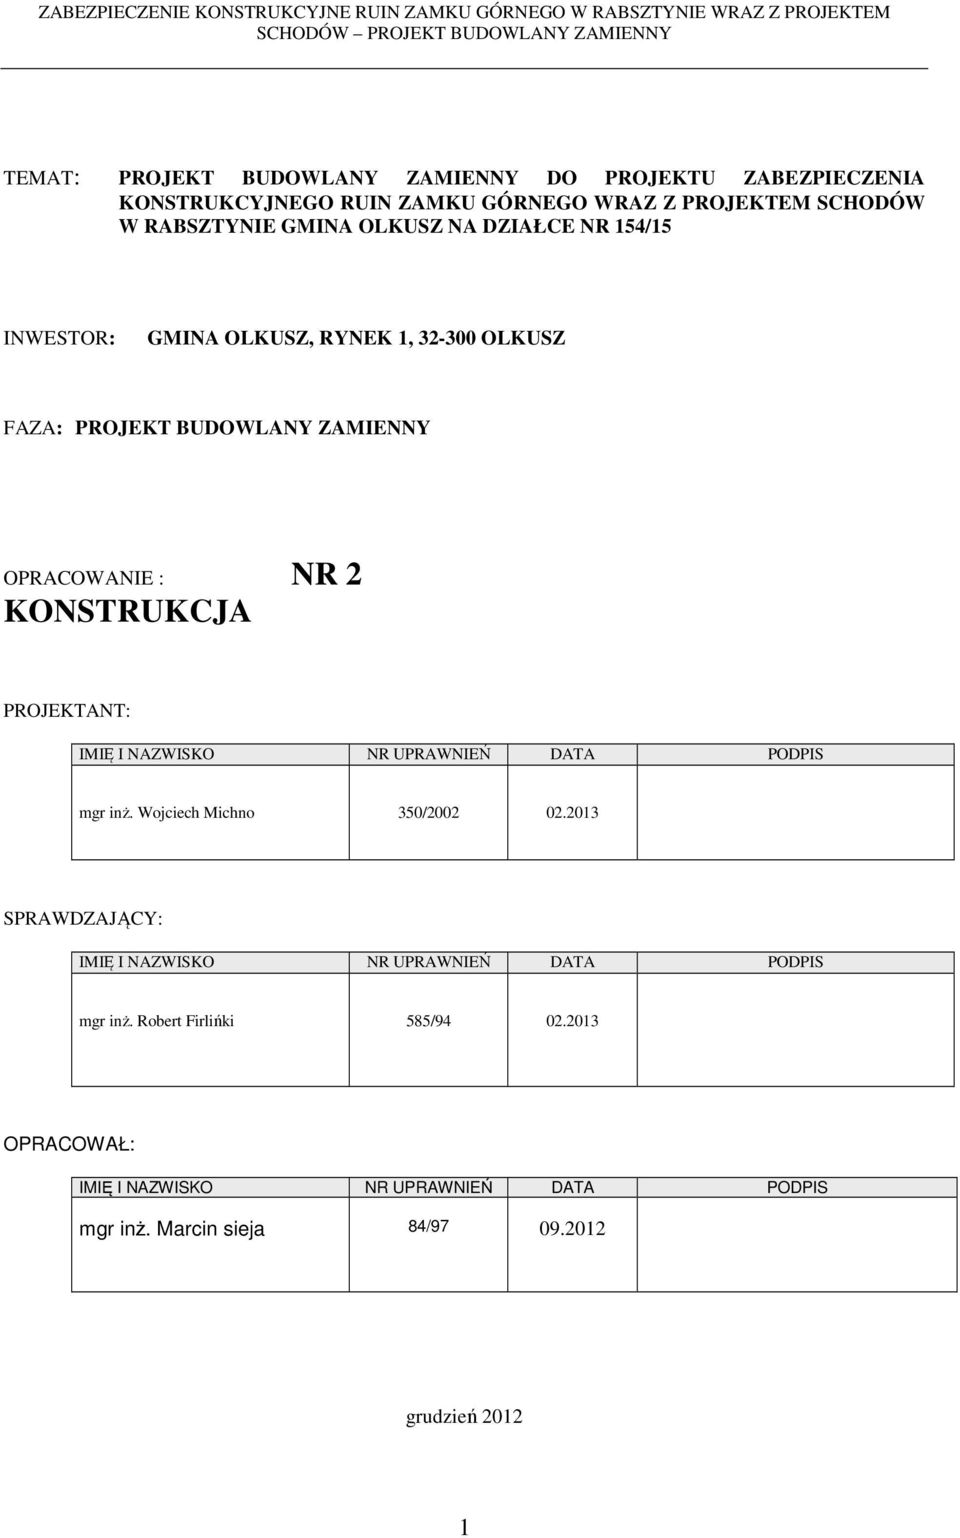 PROJEKTANT: IMIĘ I NAZWISKO NR UPRAWNIEŃ DATA PODPIS mgr inż. Wojciech Michno 350/2002 02.